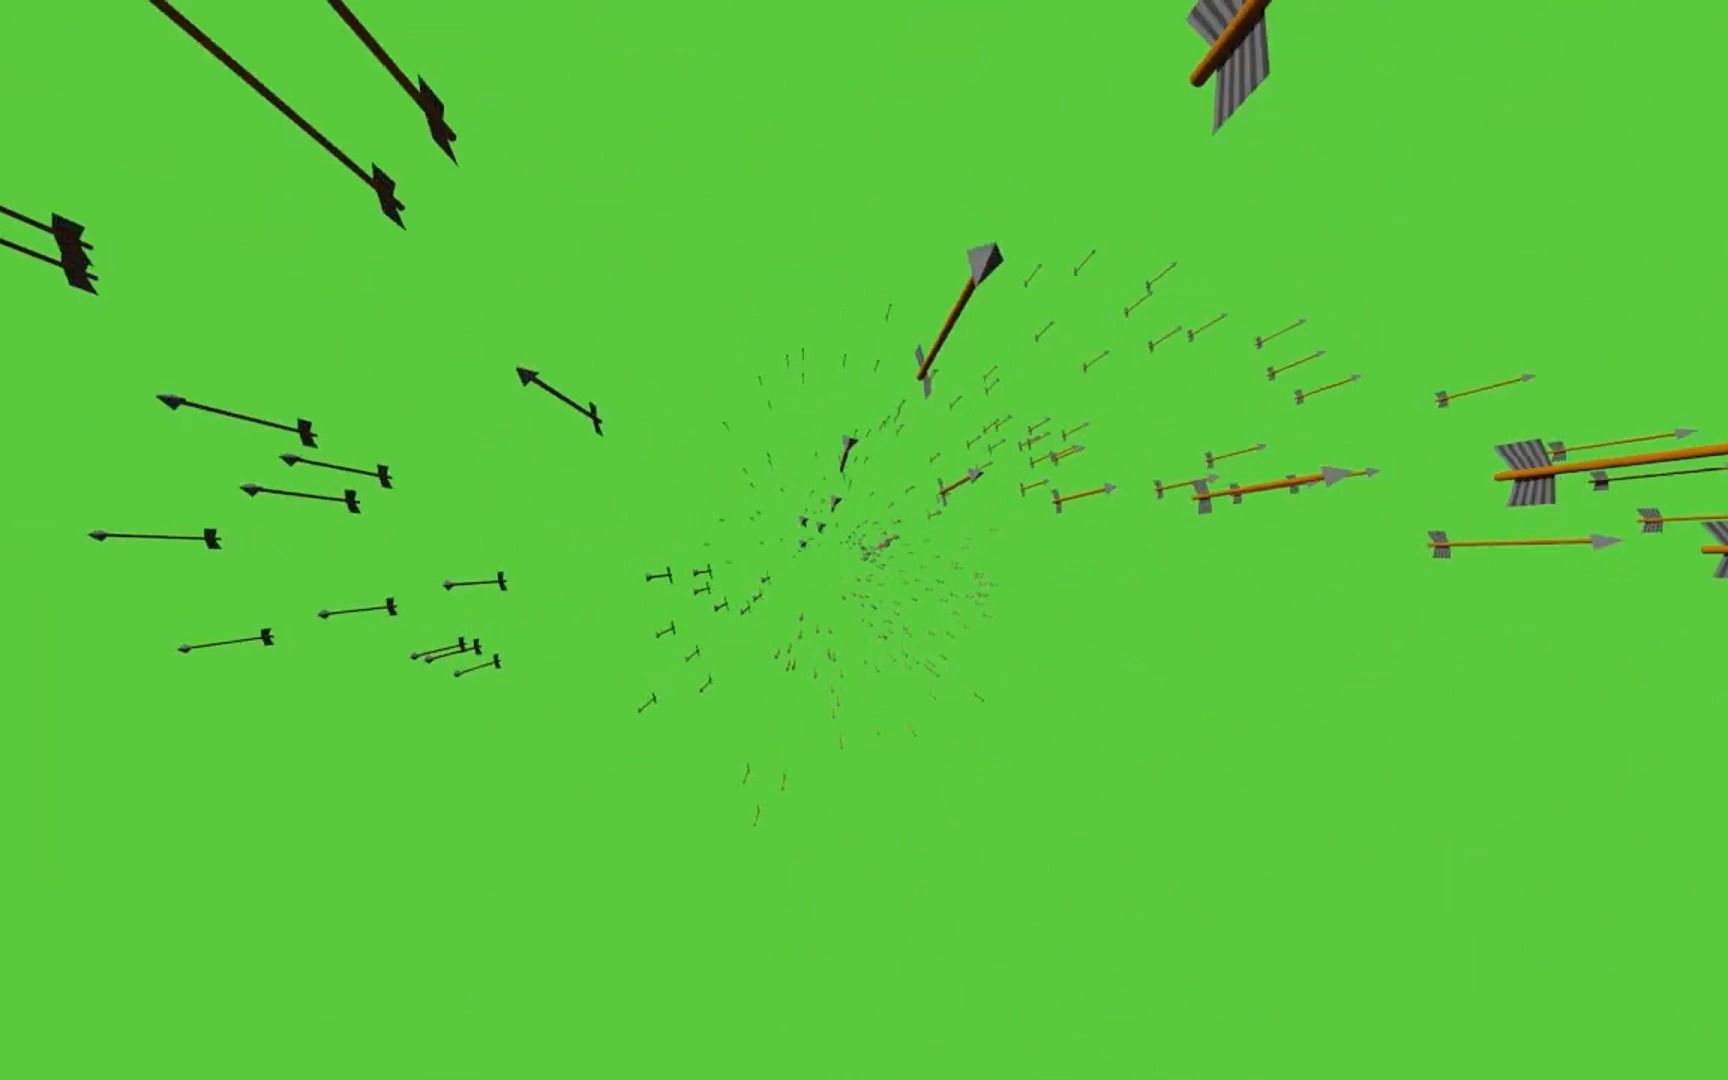 【绿幕素材】射箭,漫天的箭矢,影视动漫修仙系列特效素材,无水印,可